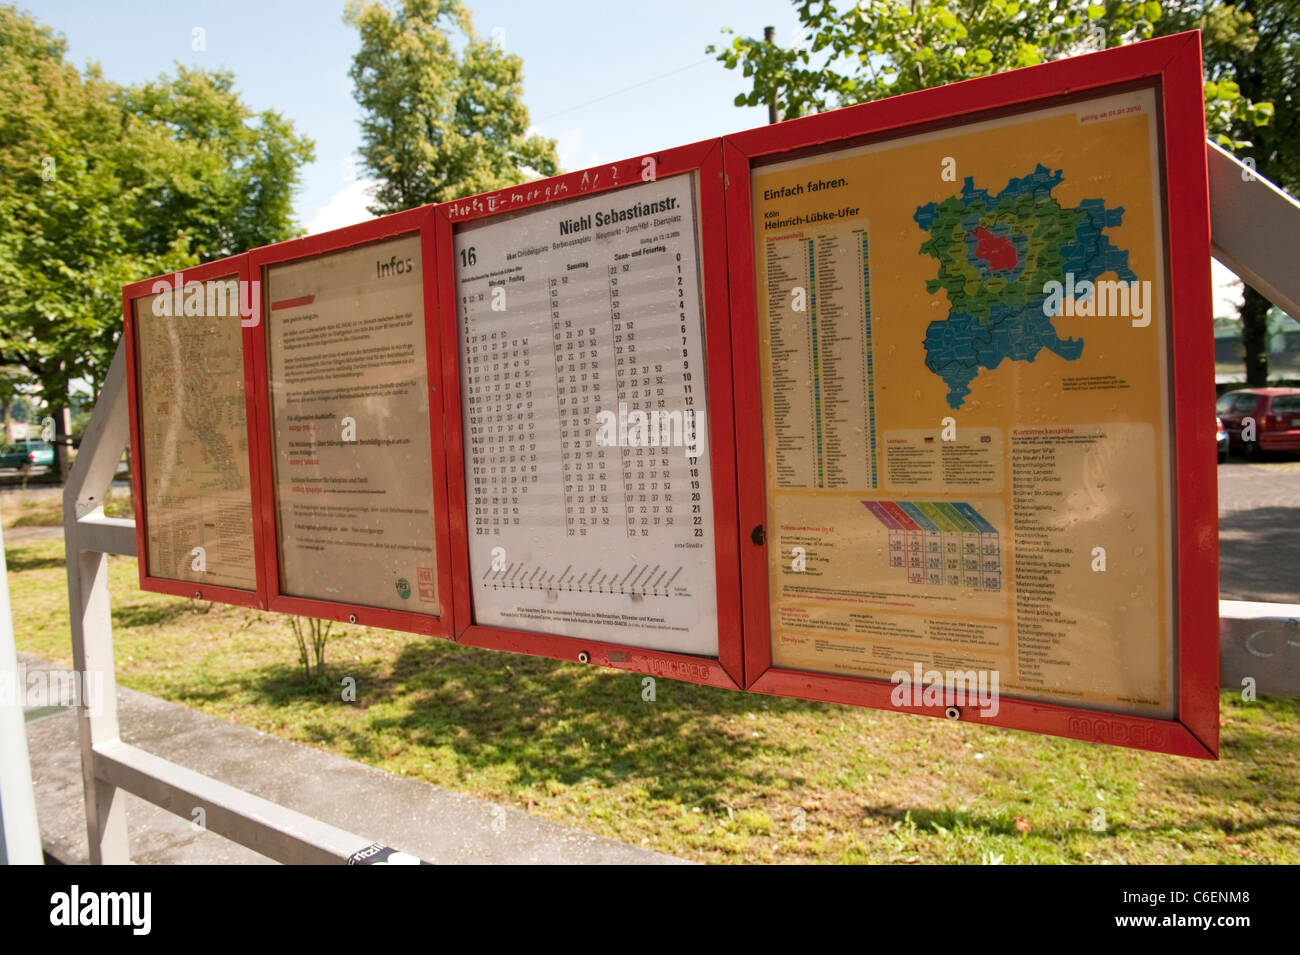 Réseau de Tramway Public Cologne Cologne Allemagne Europe signe la carte Banque D'Images